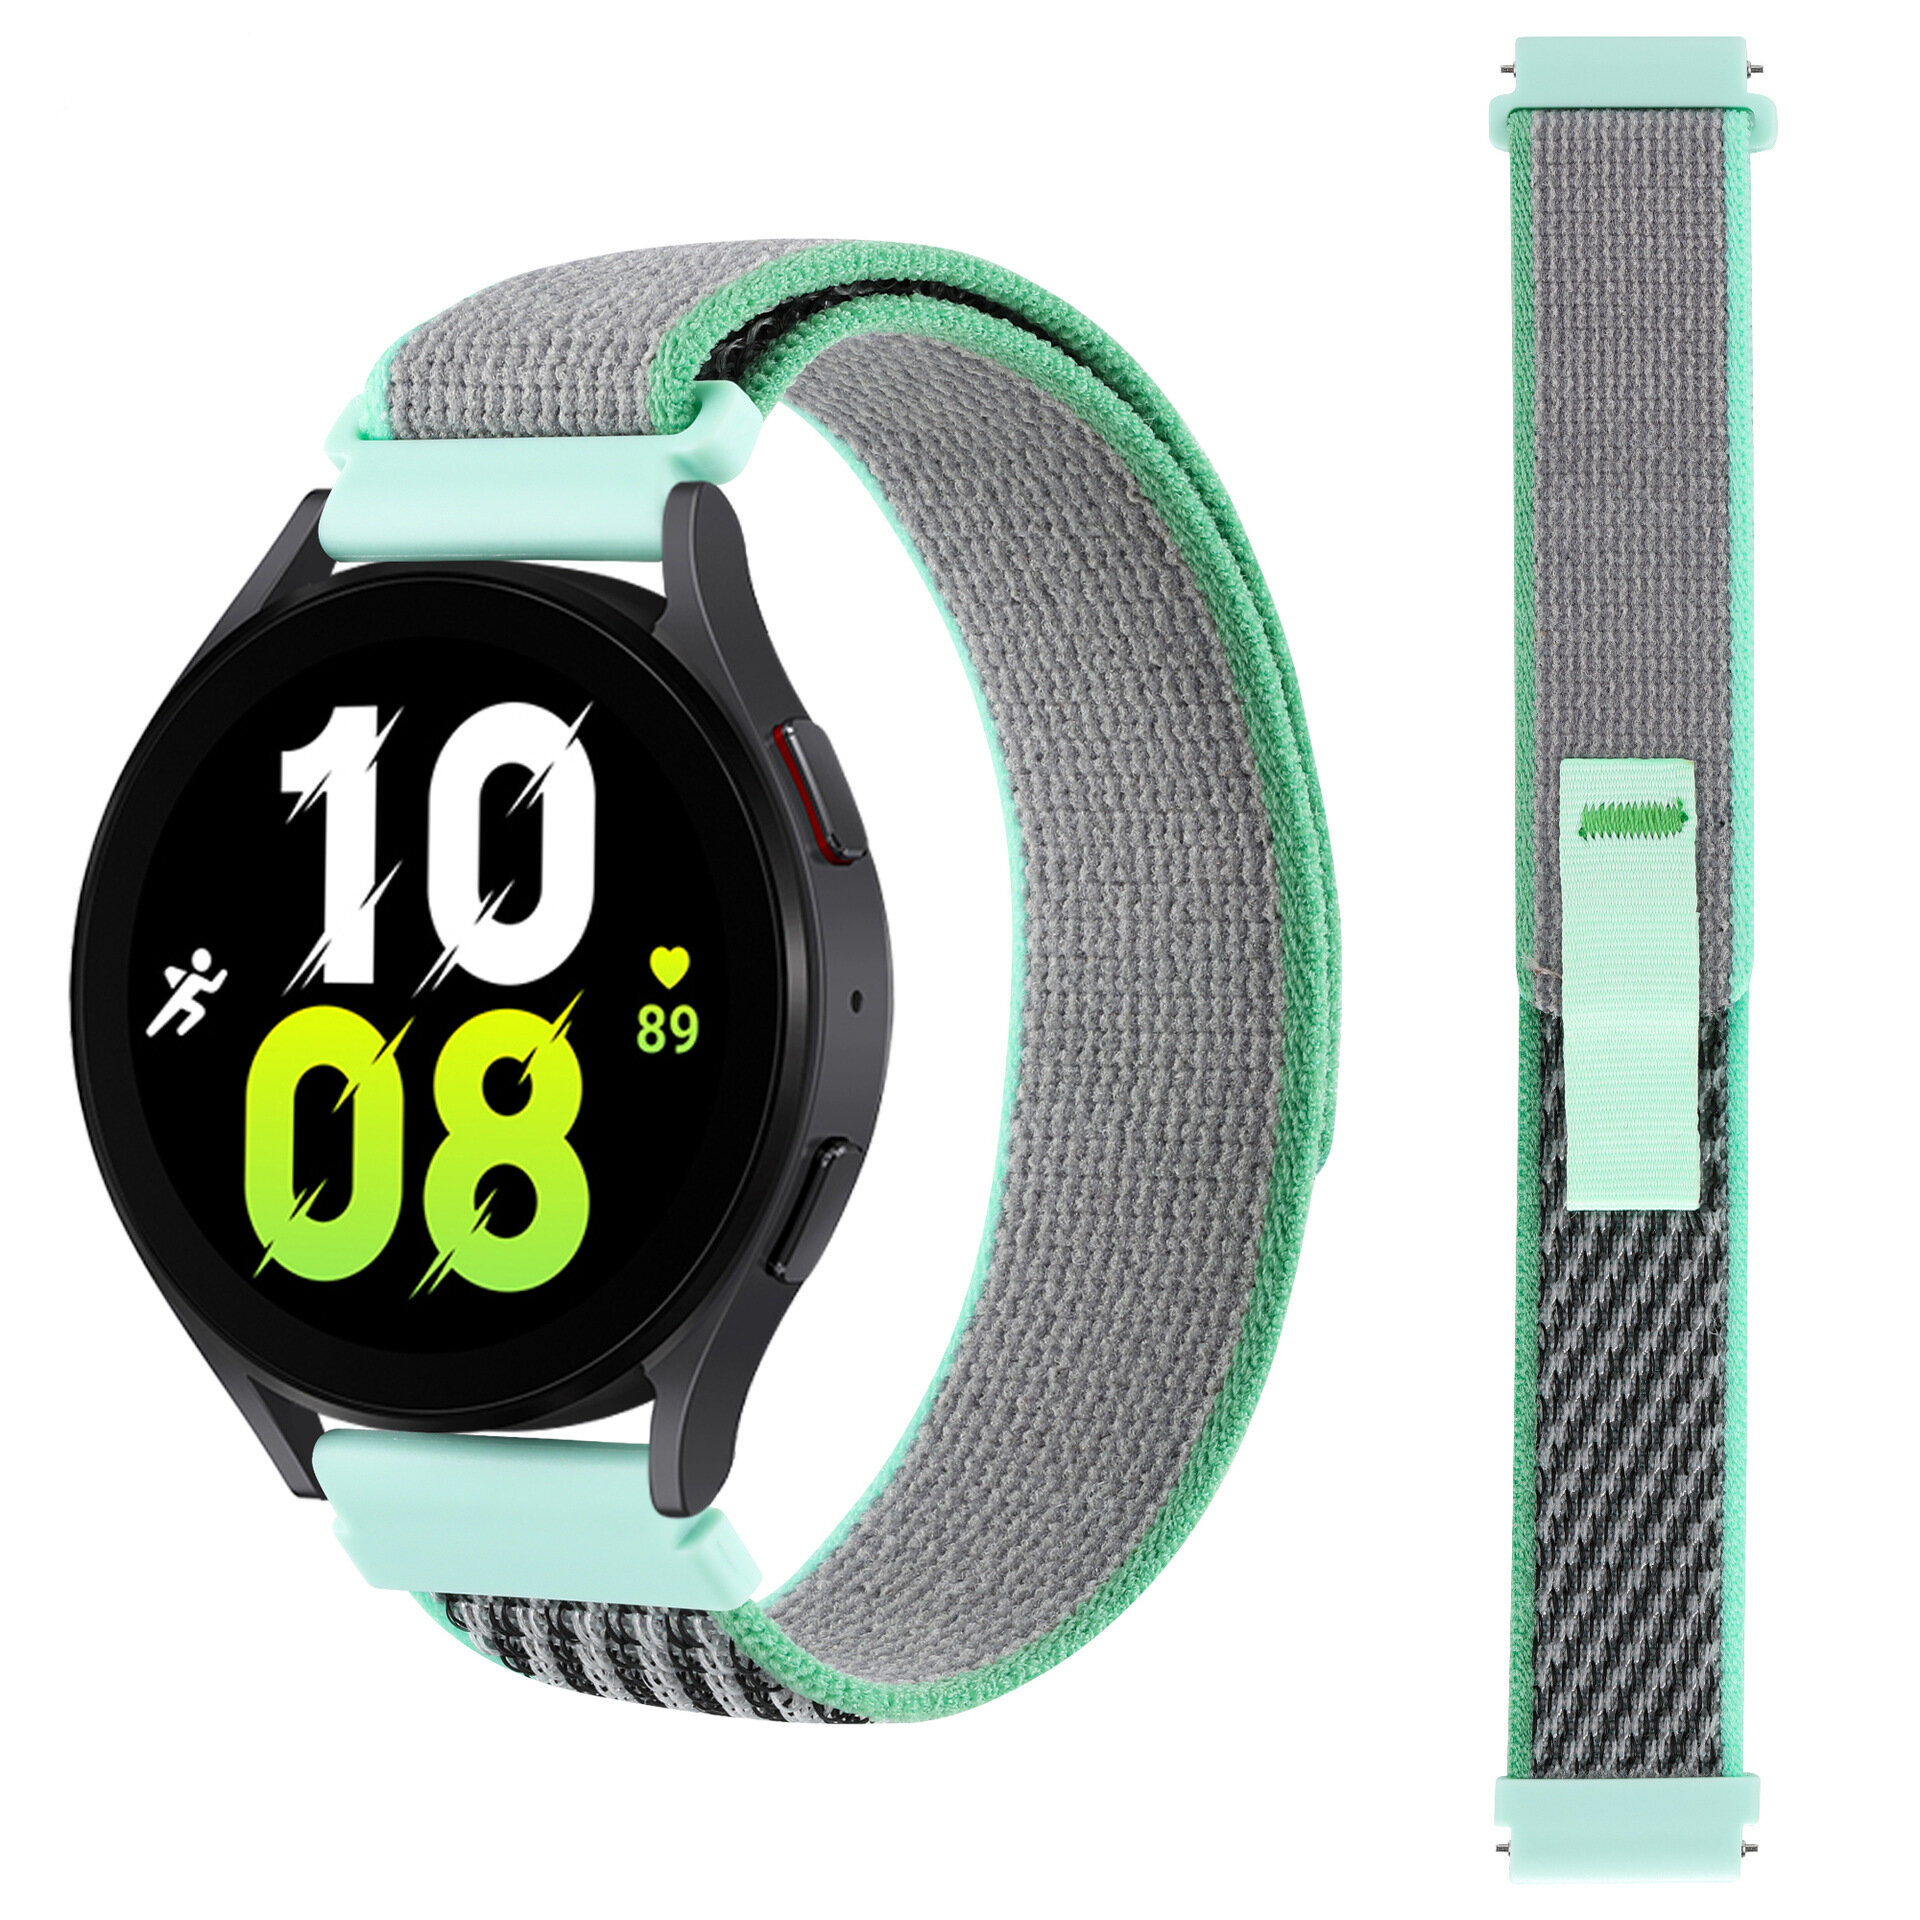 Ремешок нейлоновый Trail Loop для смарт-часов с креплением 20 мм Garmin, Samsung Galaxy Watch, Huawei Watch, Honor, Xiaomi Amazfit, 08 зеленый с серым